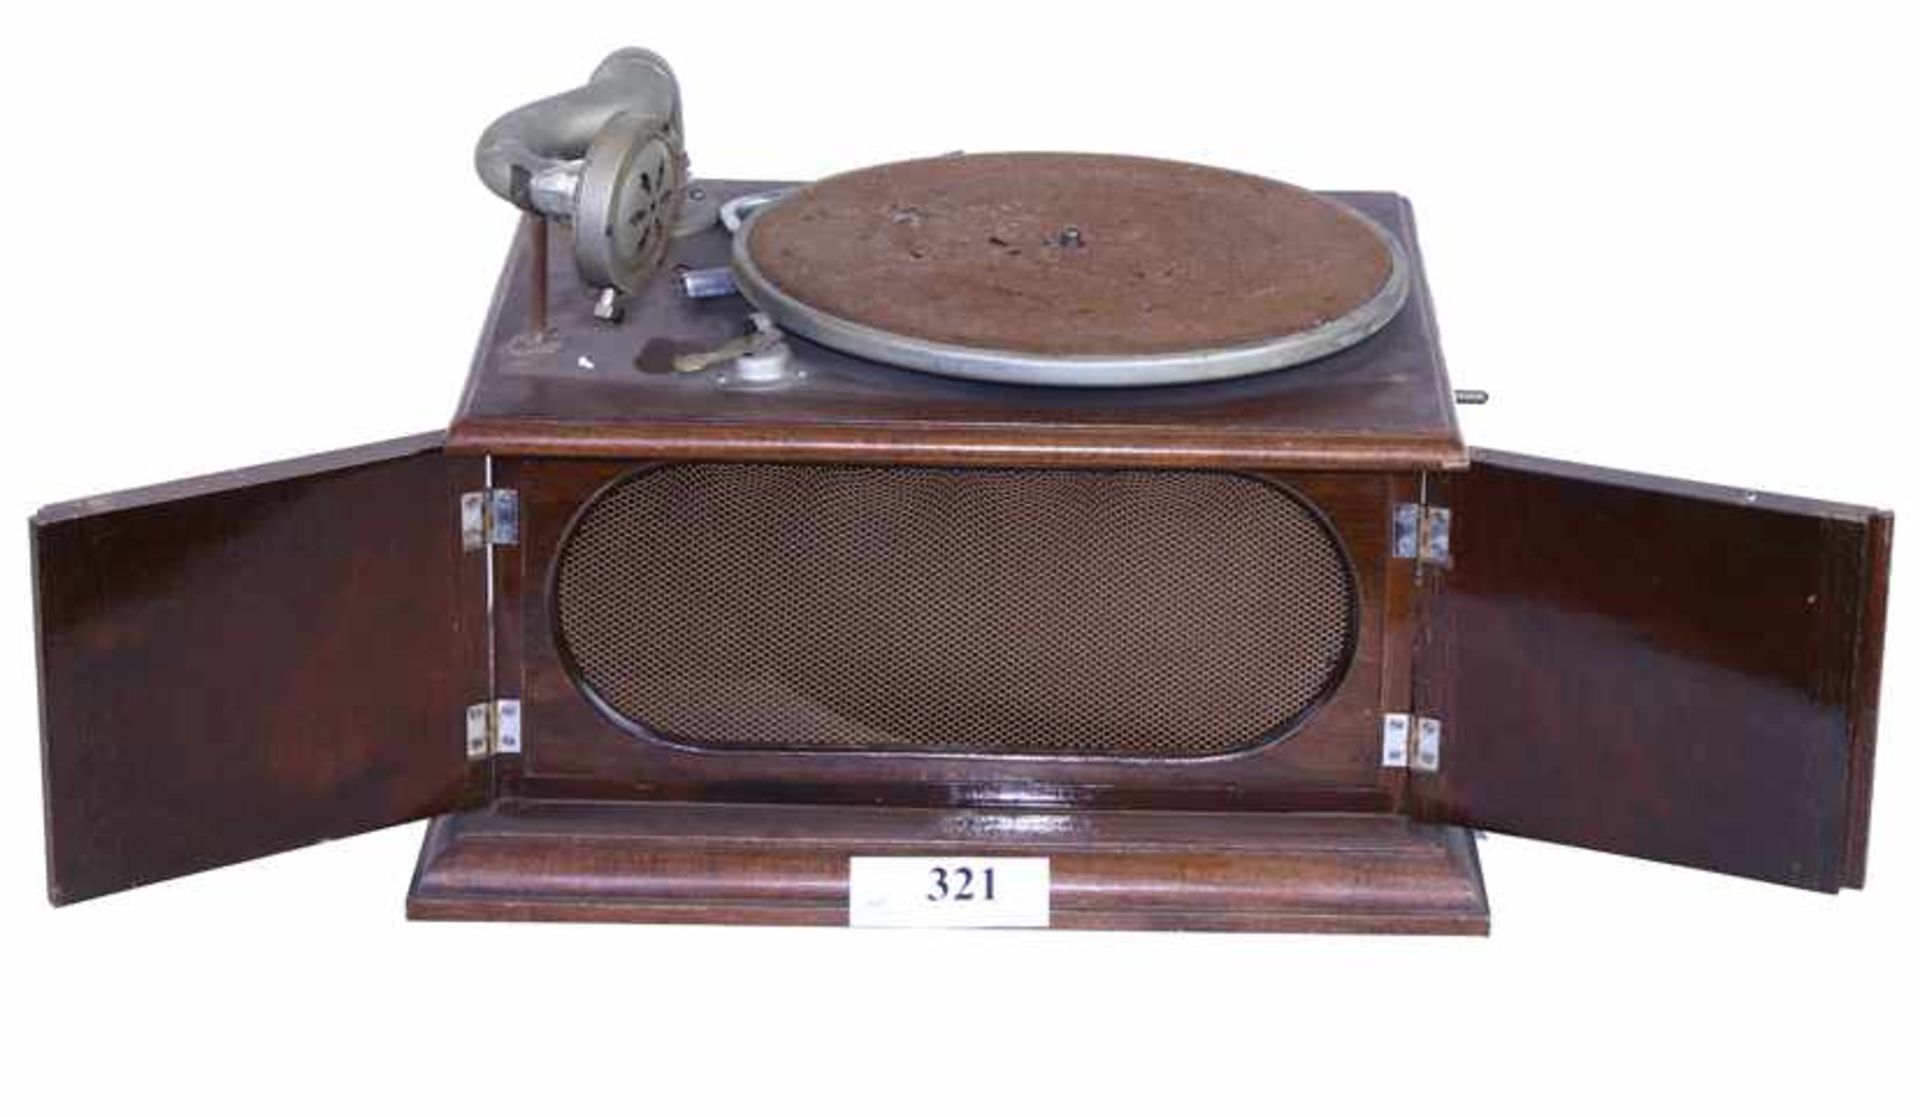 Grammofoon, Merkloos - Mahoniehouten tafelmodel zonder deksel, verkocht door firma Van Hees te